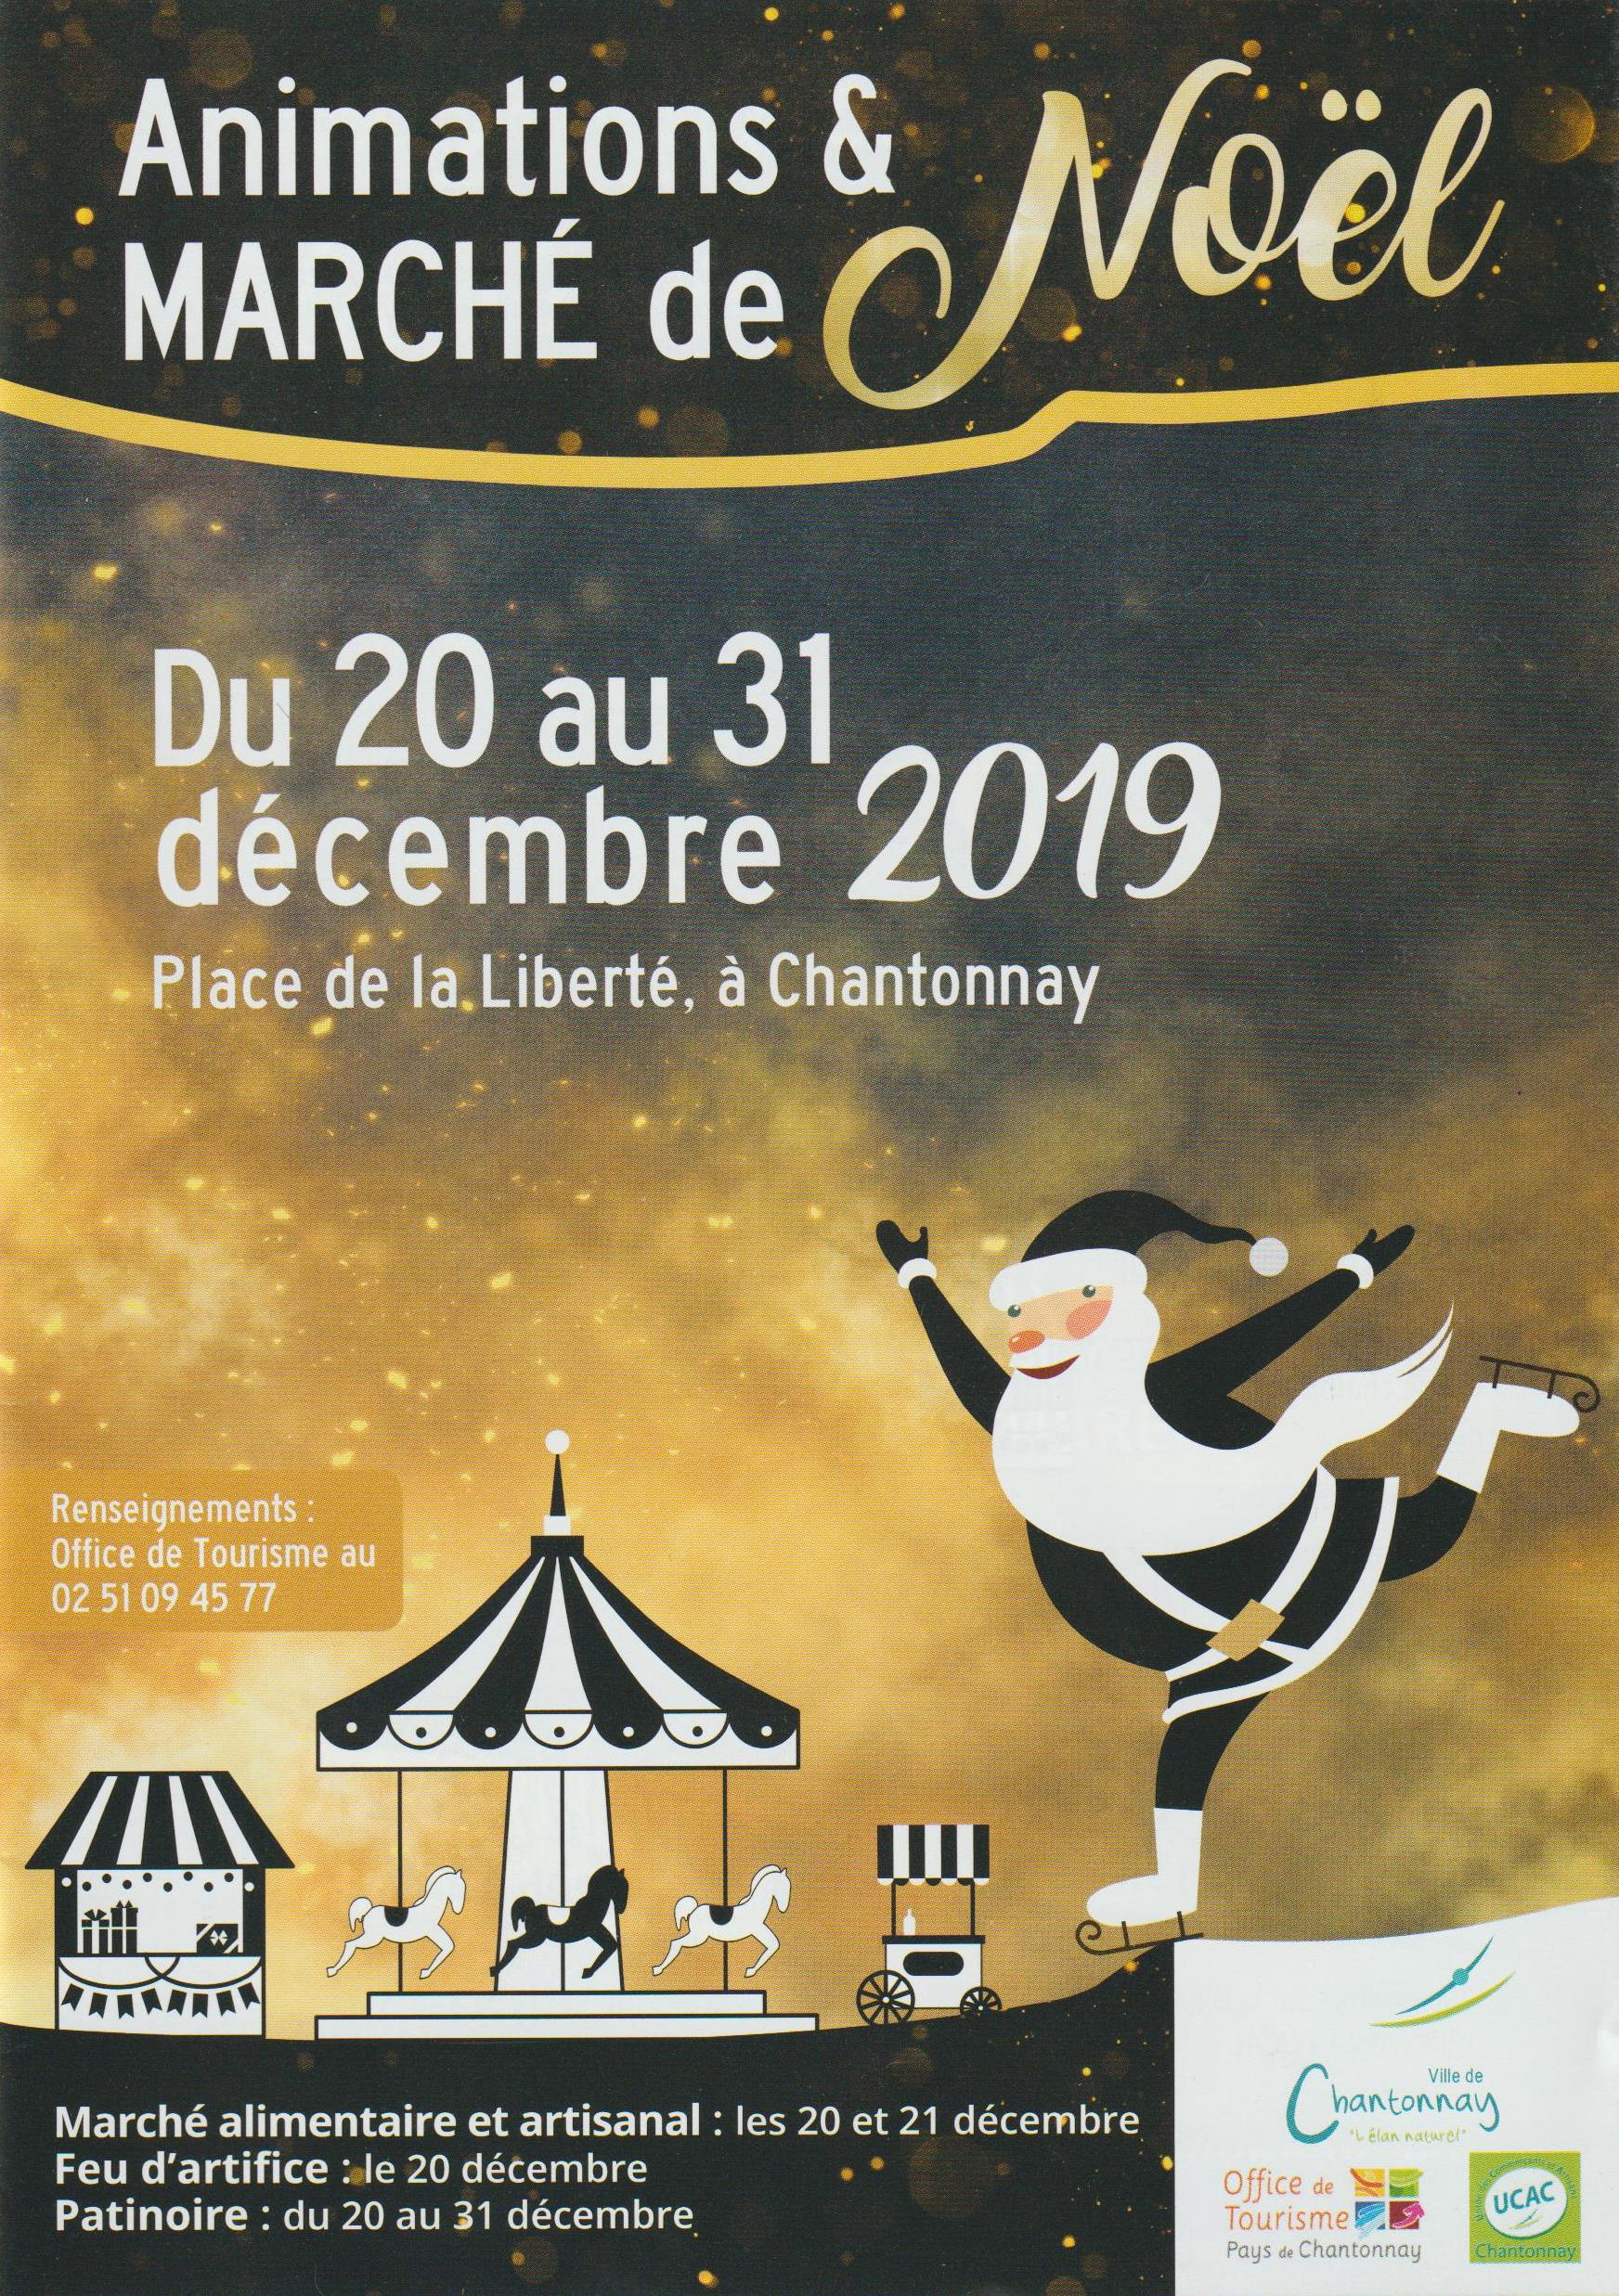 Affiche du marché de Noël de Chantonnay, père Noël dessiné faisant du patin à glace